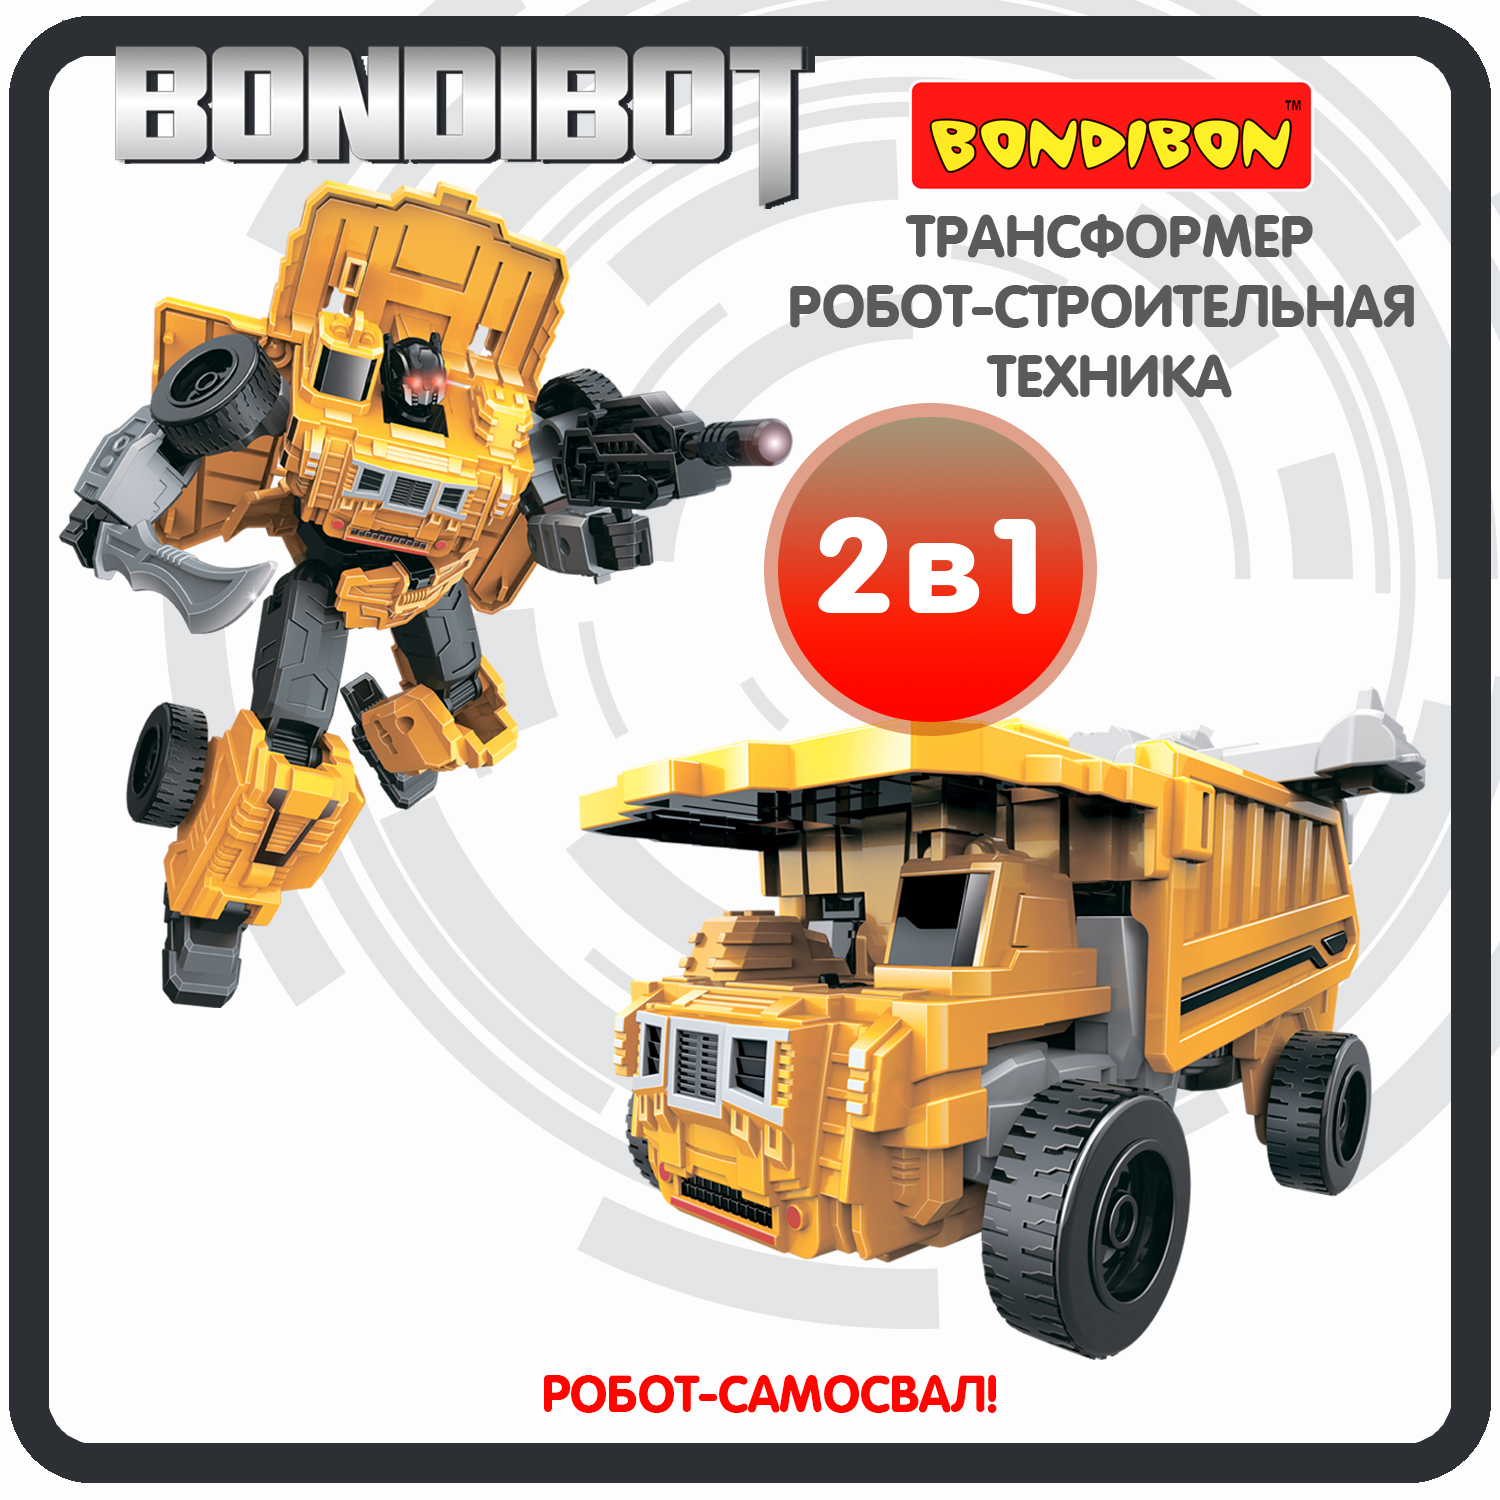 Трансформер робот-строительная техника, 2в1 BONDIBOT Bondibon, самосвал / ВВ6046 трансформер робот строительная техника 2в1 bondibot bondibon тяжёлый экскаватор вв6057